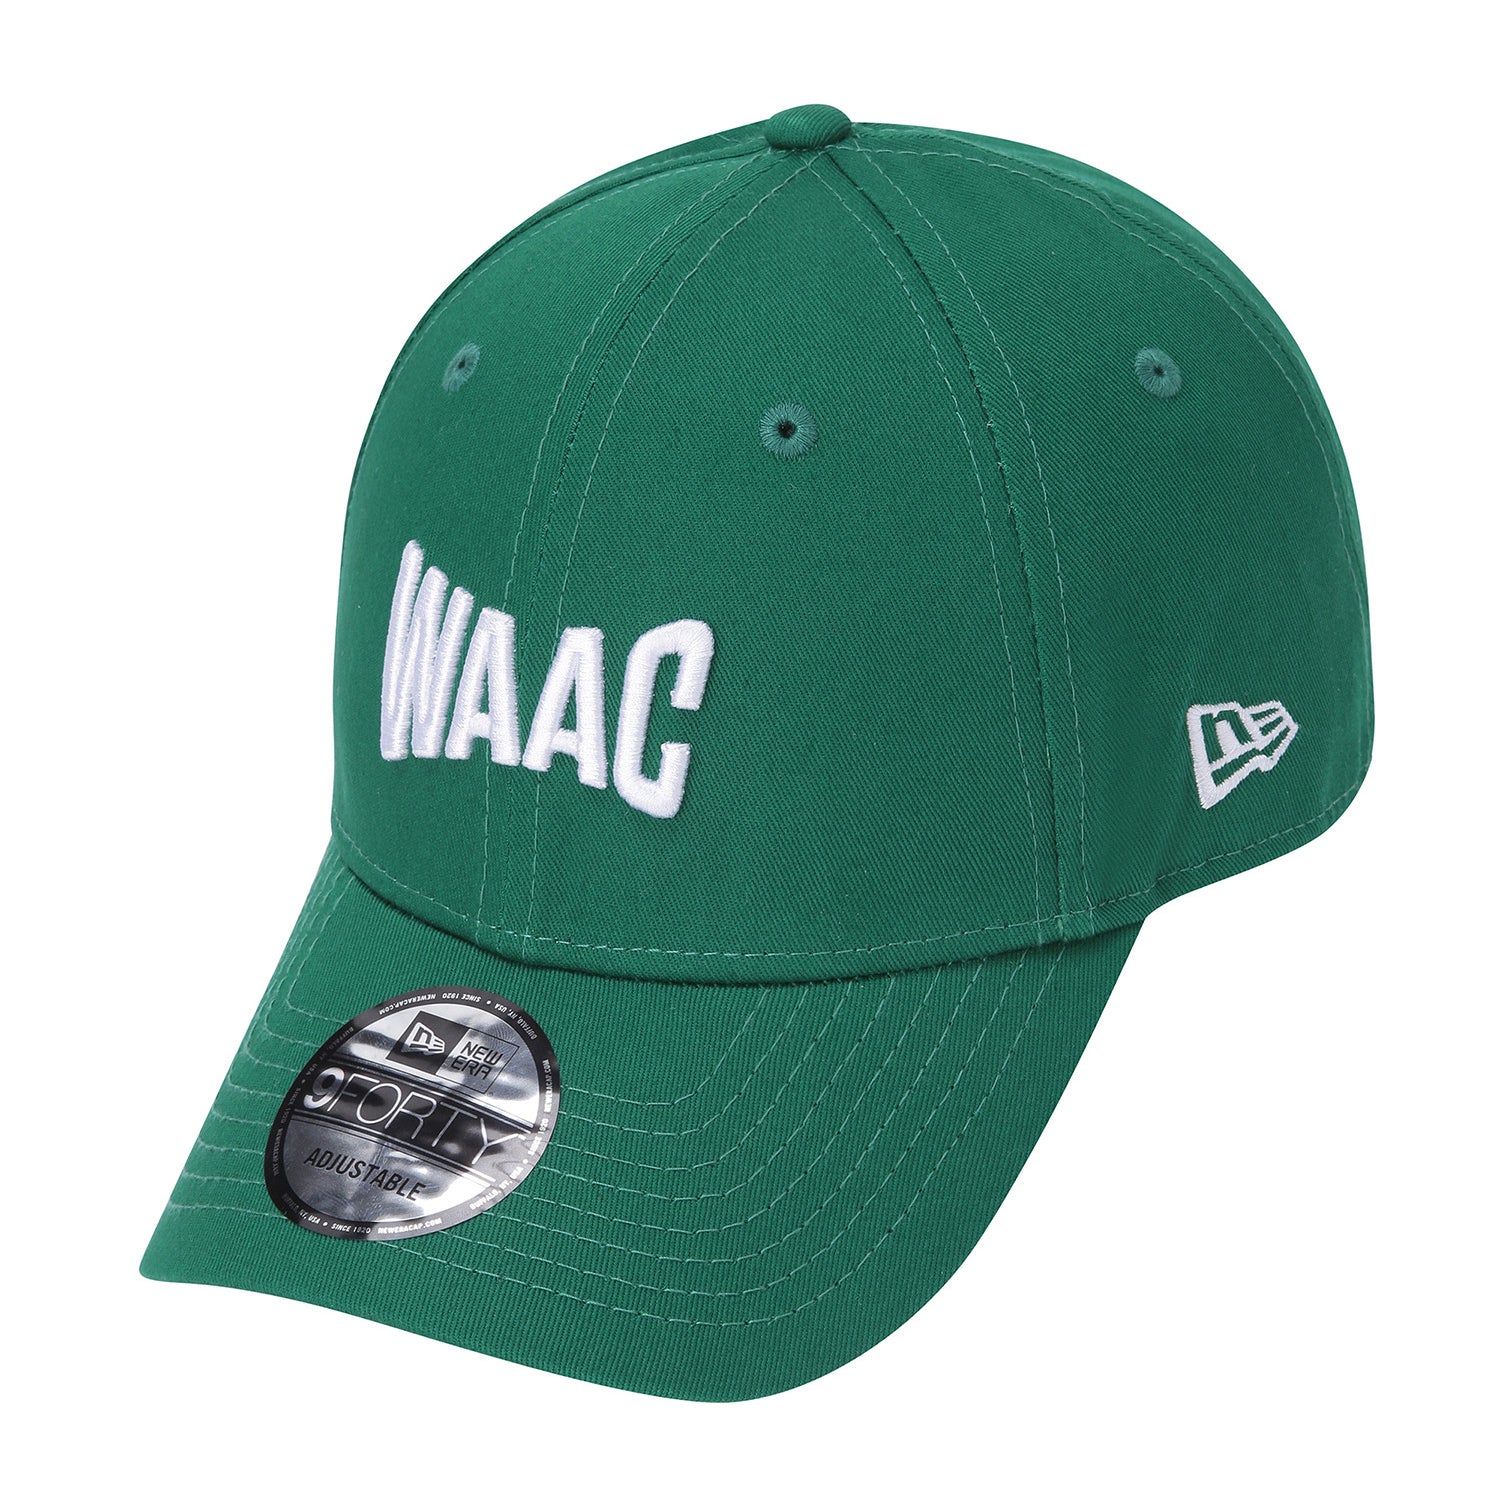 WAAC X NEWERA 940 棒球帽